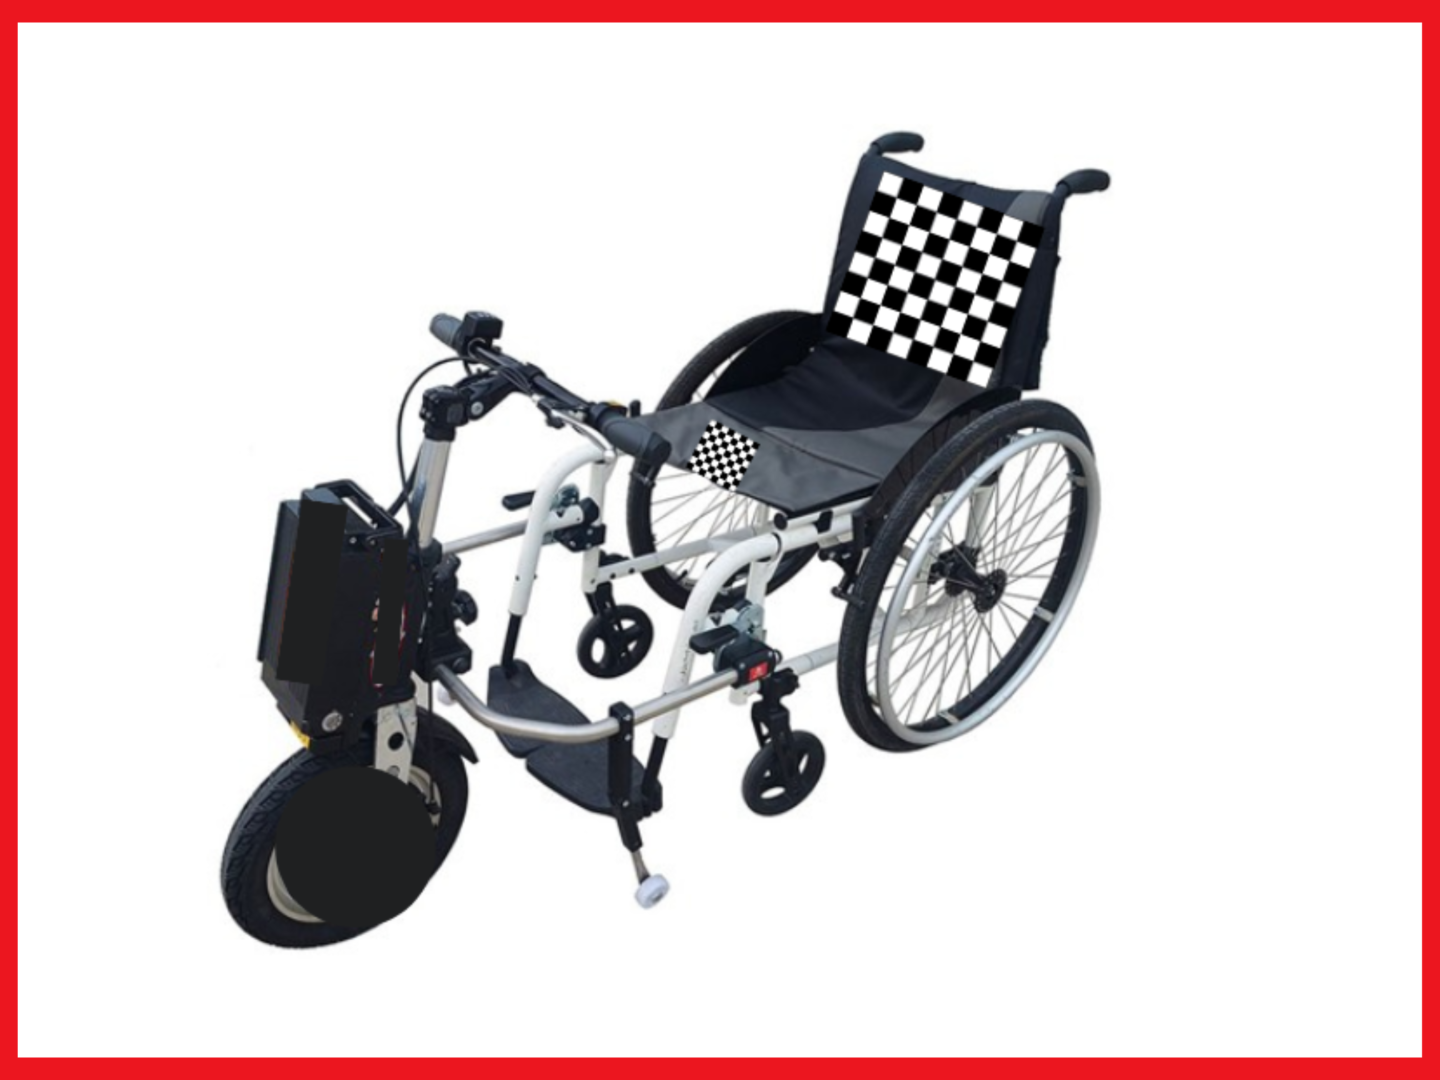 Dispositivo elettrico che permette la motorizzazione di ogni tipo di carrozzina per disabili.